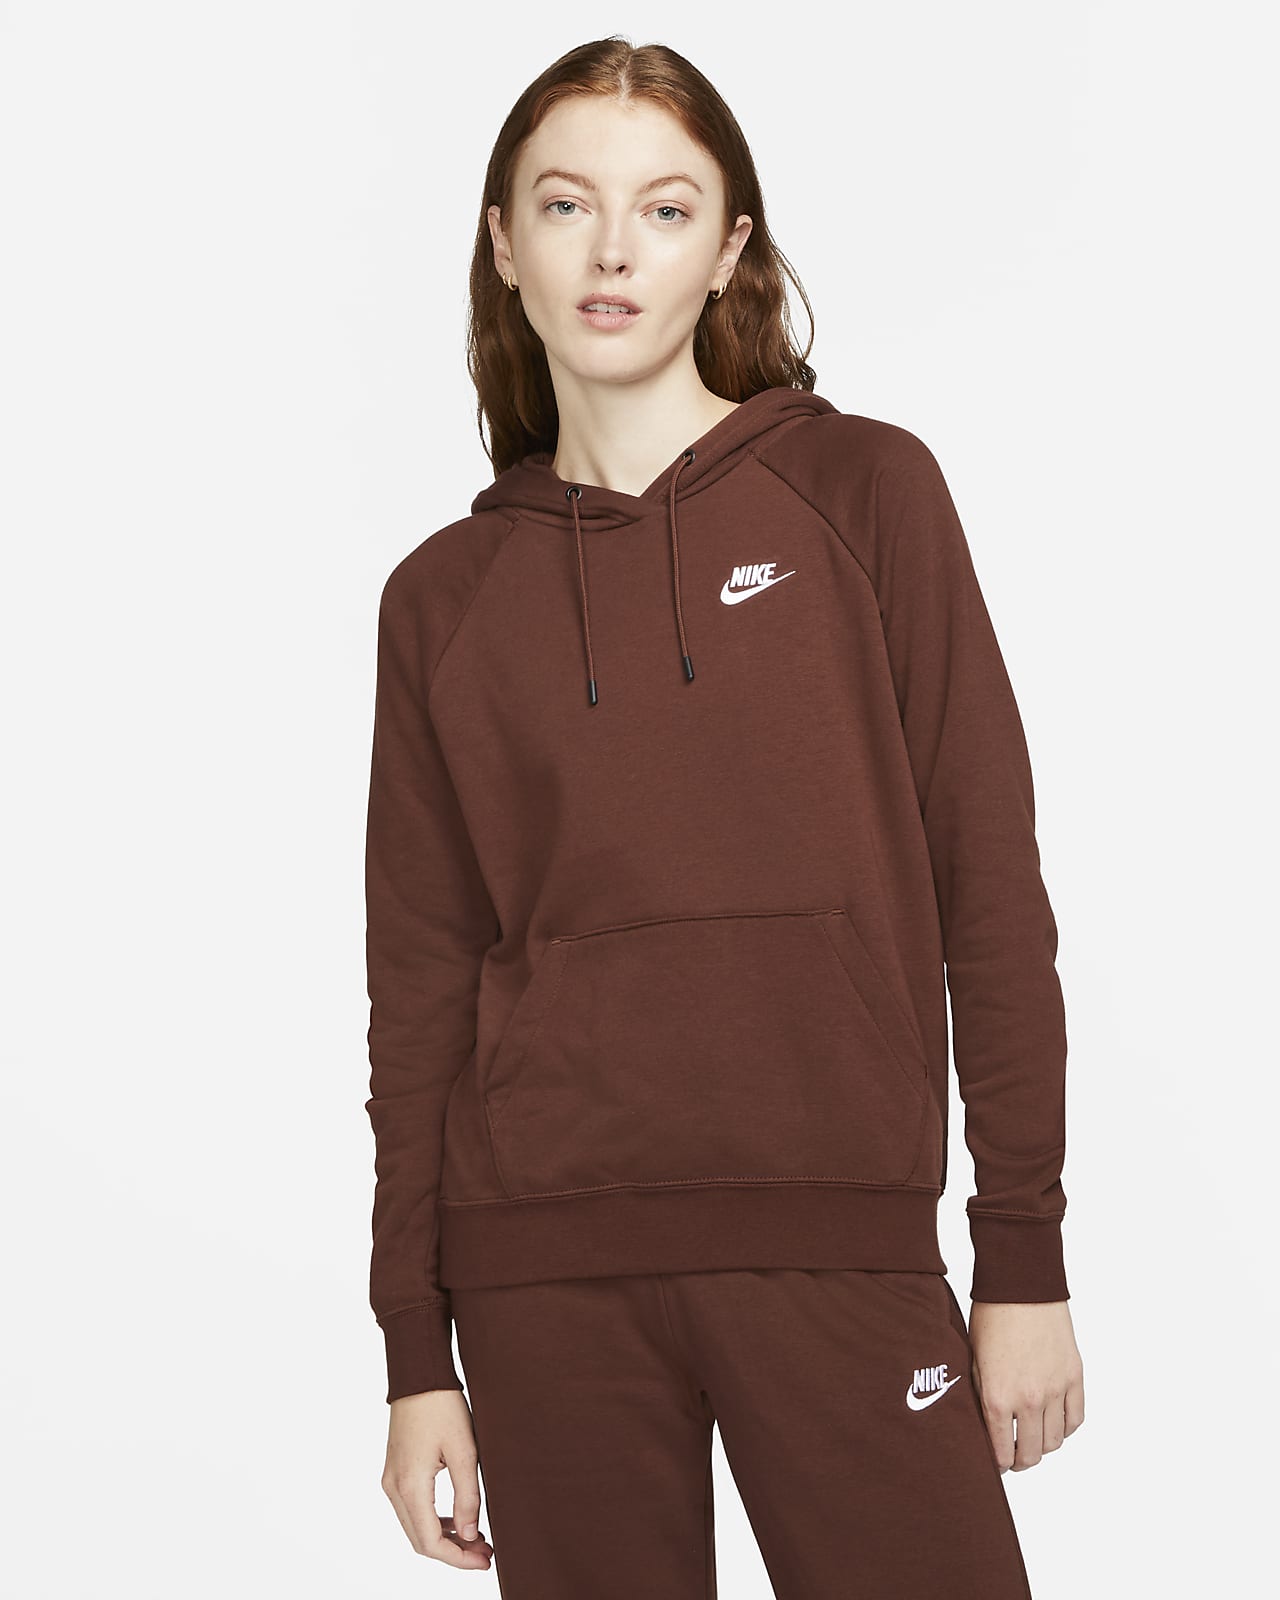 Felpa pullover in fleece con cappuccio Nike Sportswear Essential - Donna